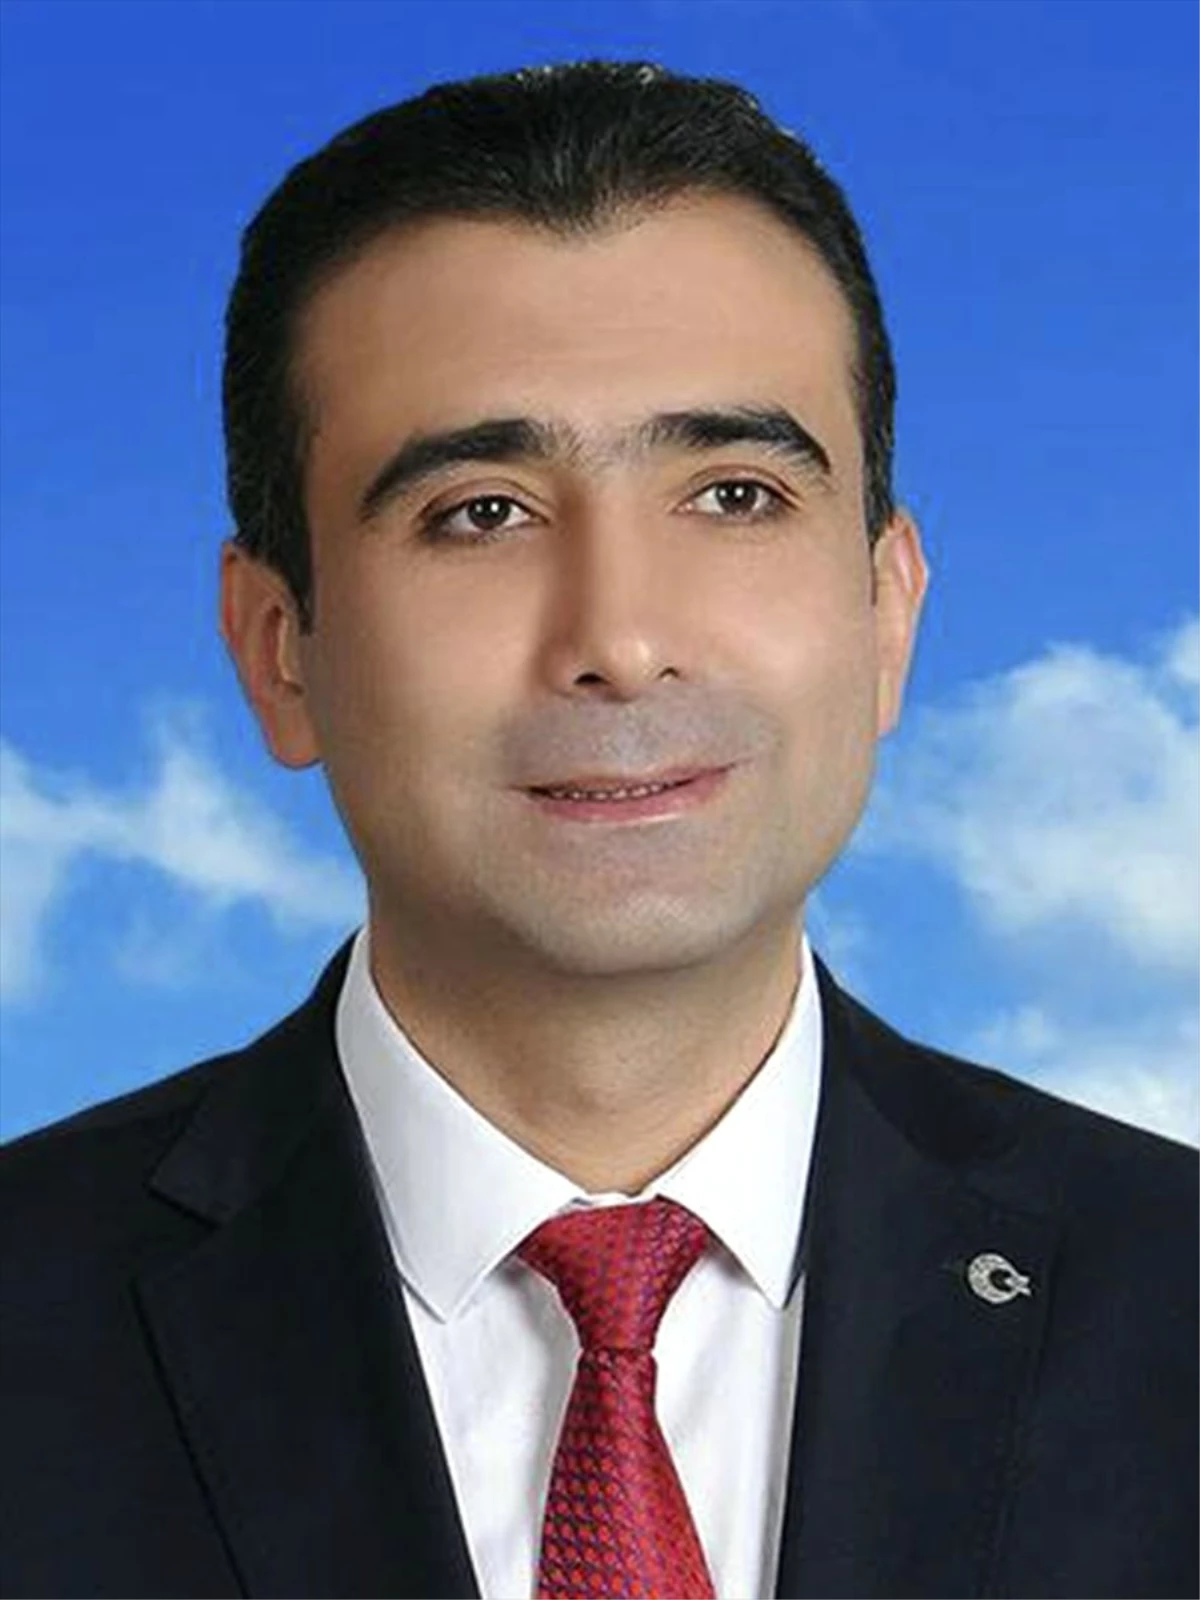 Karaman Belediye Başkanlığını Kesin Olmayan Sonuçlara Göre, MHP Adayı Savaş Kalaycı Kazandı.